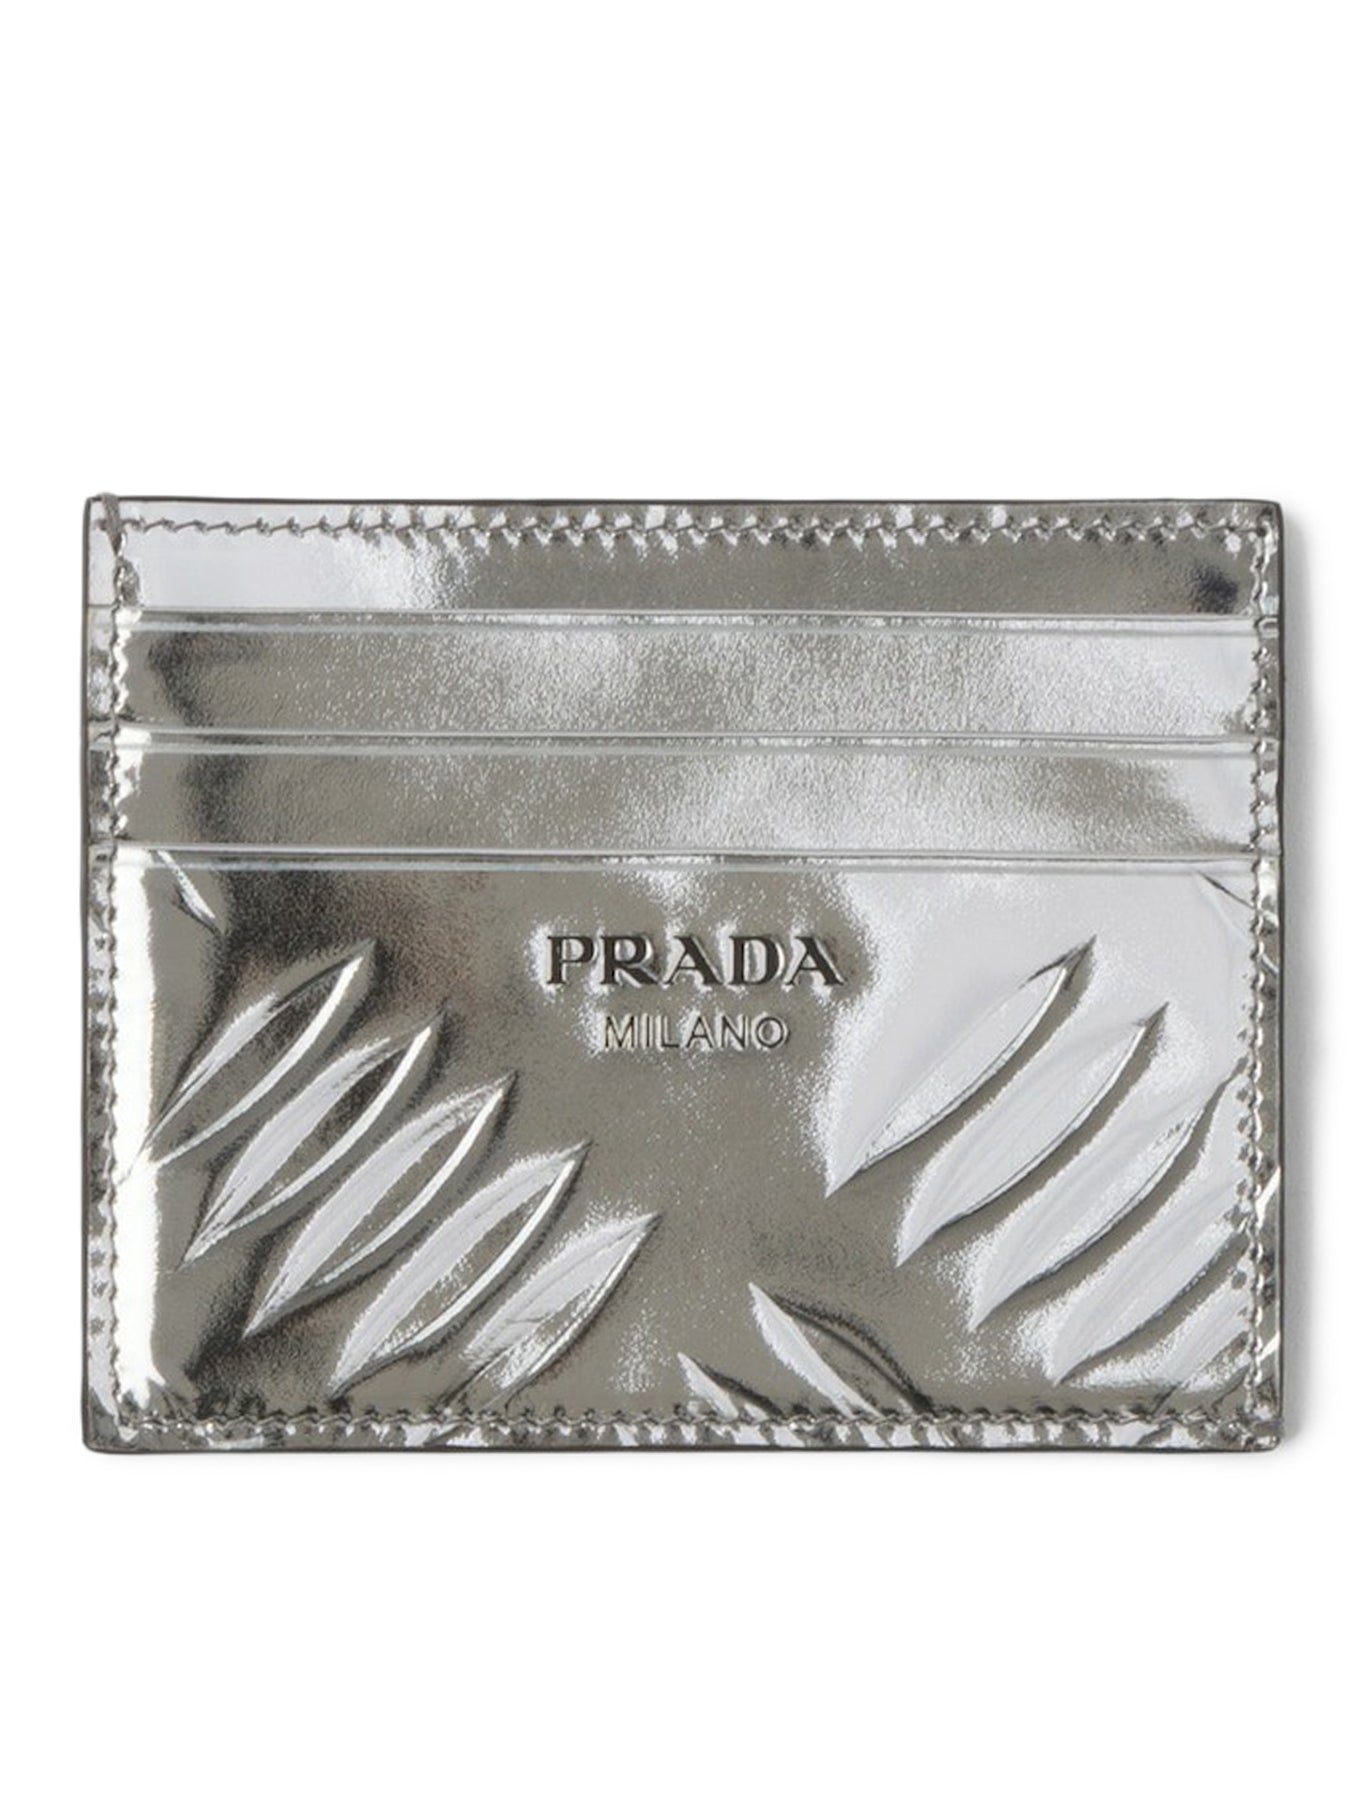 Brushed leather card holder